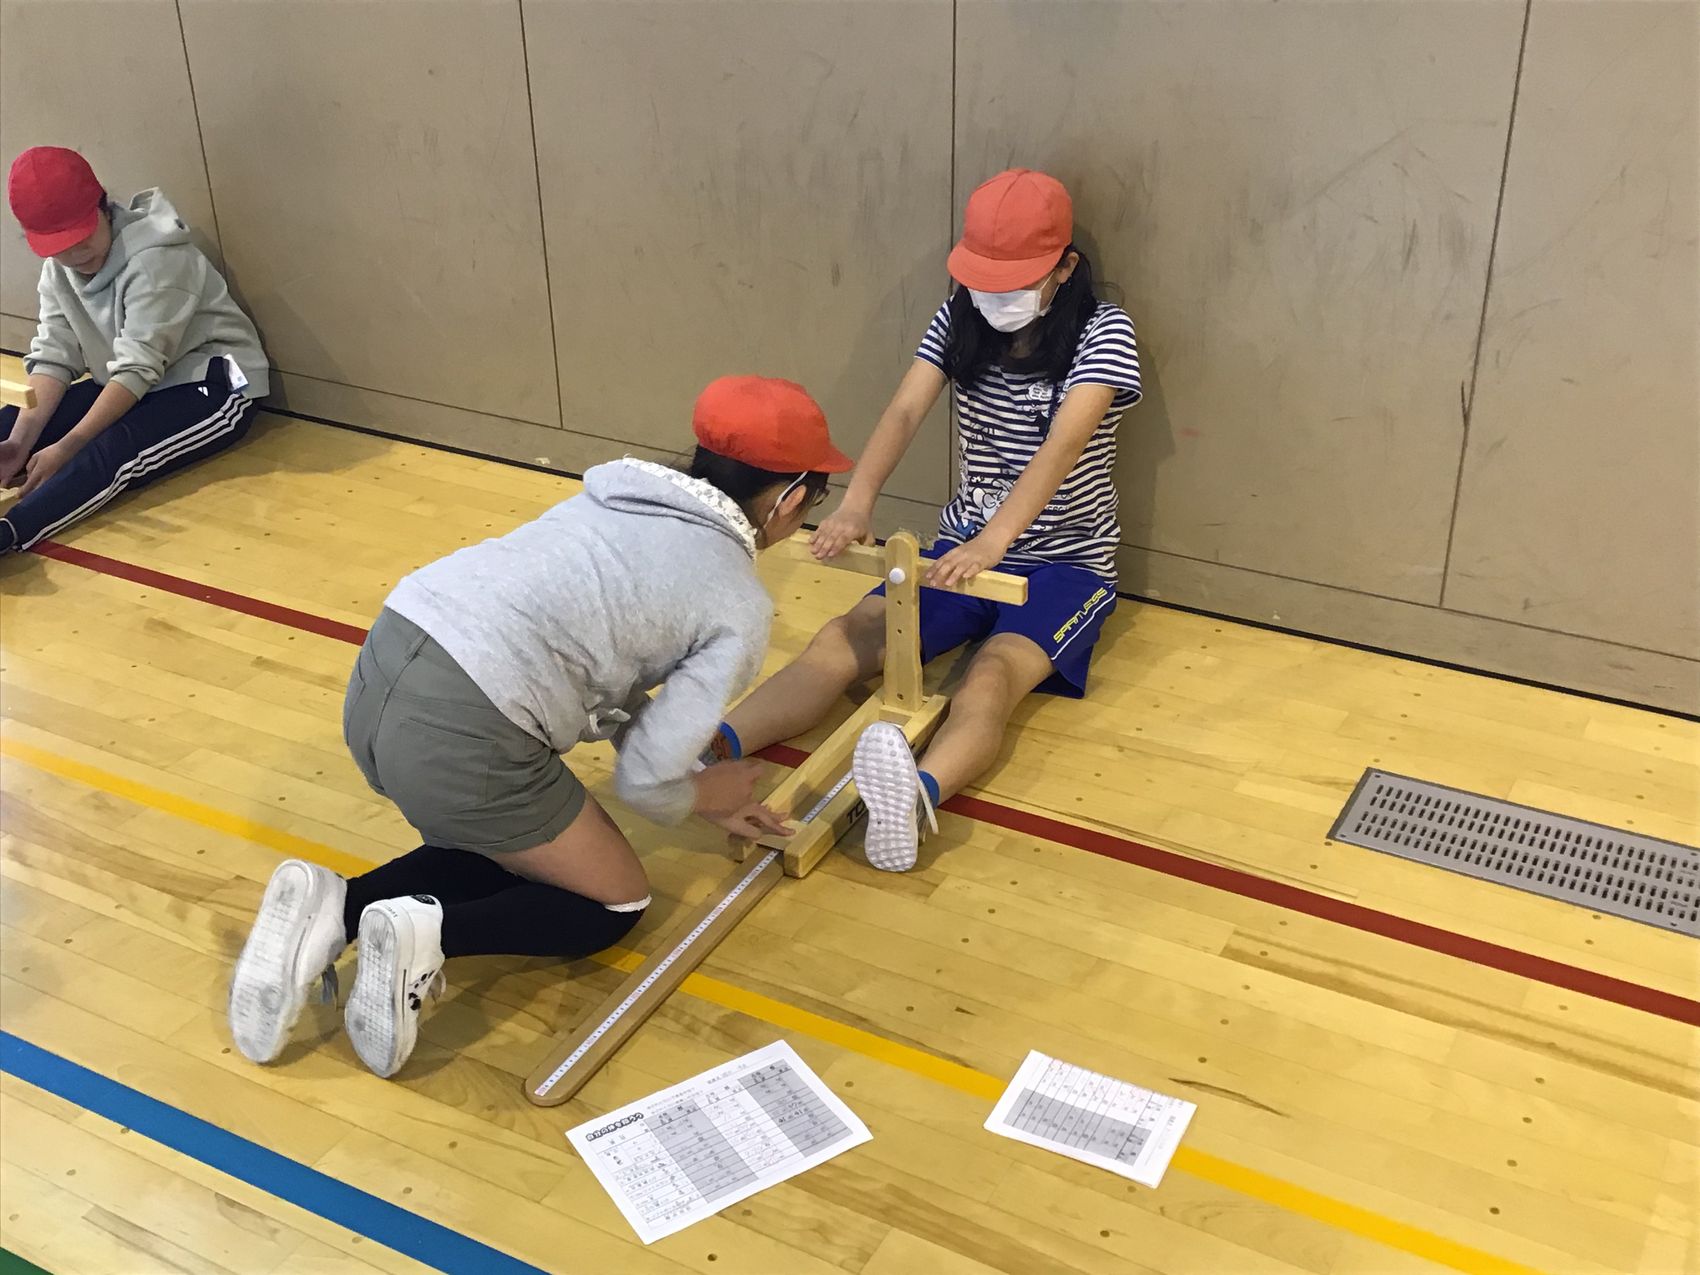 体育館の床に座り木製の器具を使って体力測定をしている、赤い帽子をかぶっている2人の女の子の写真